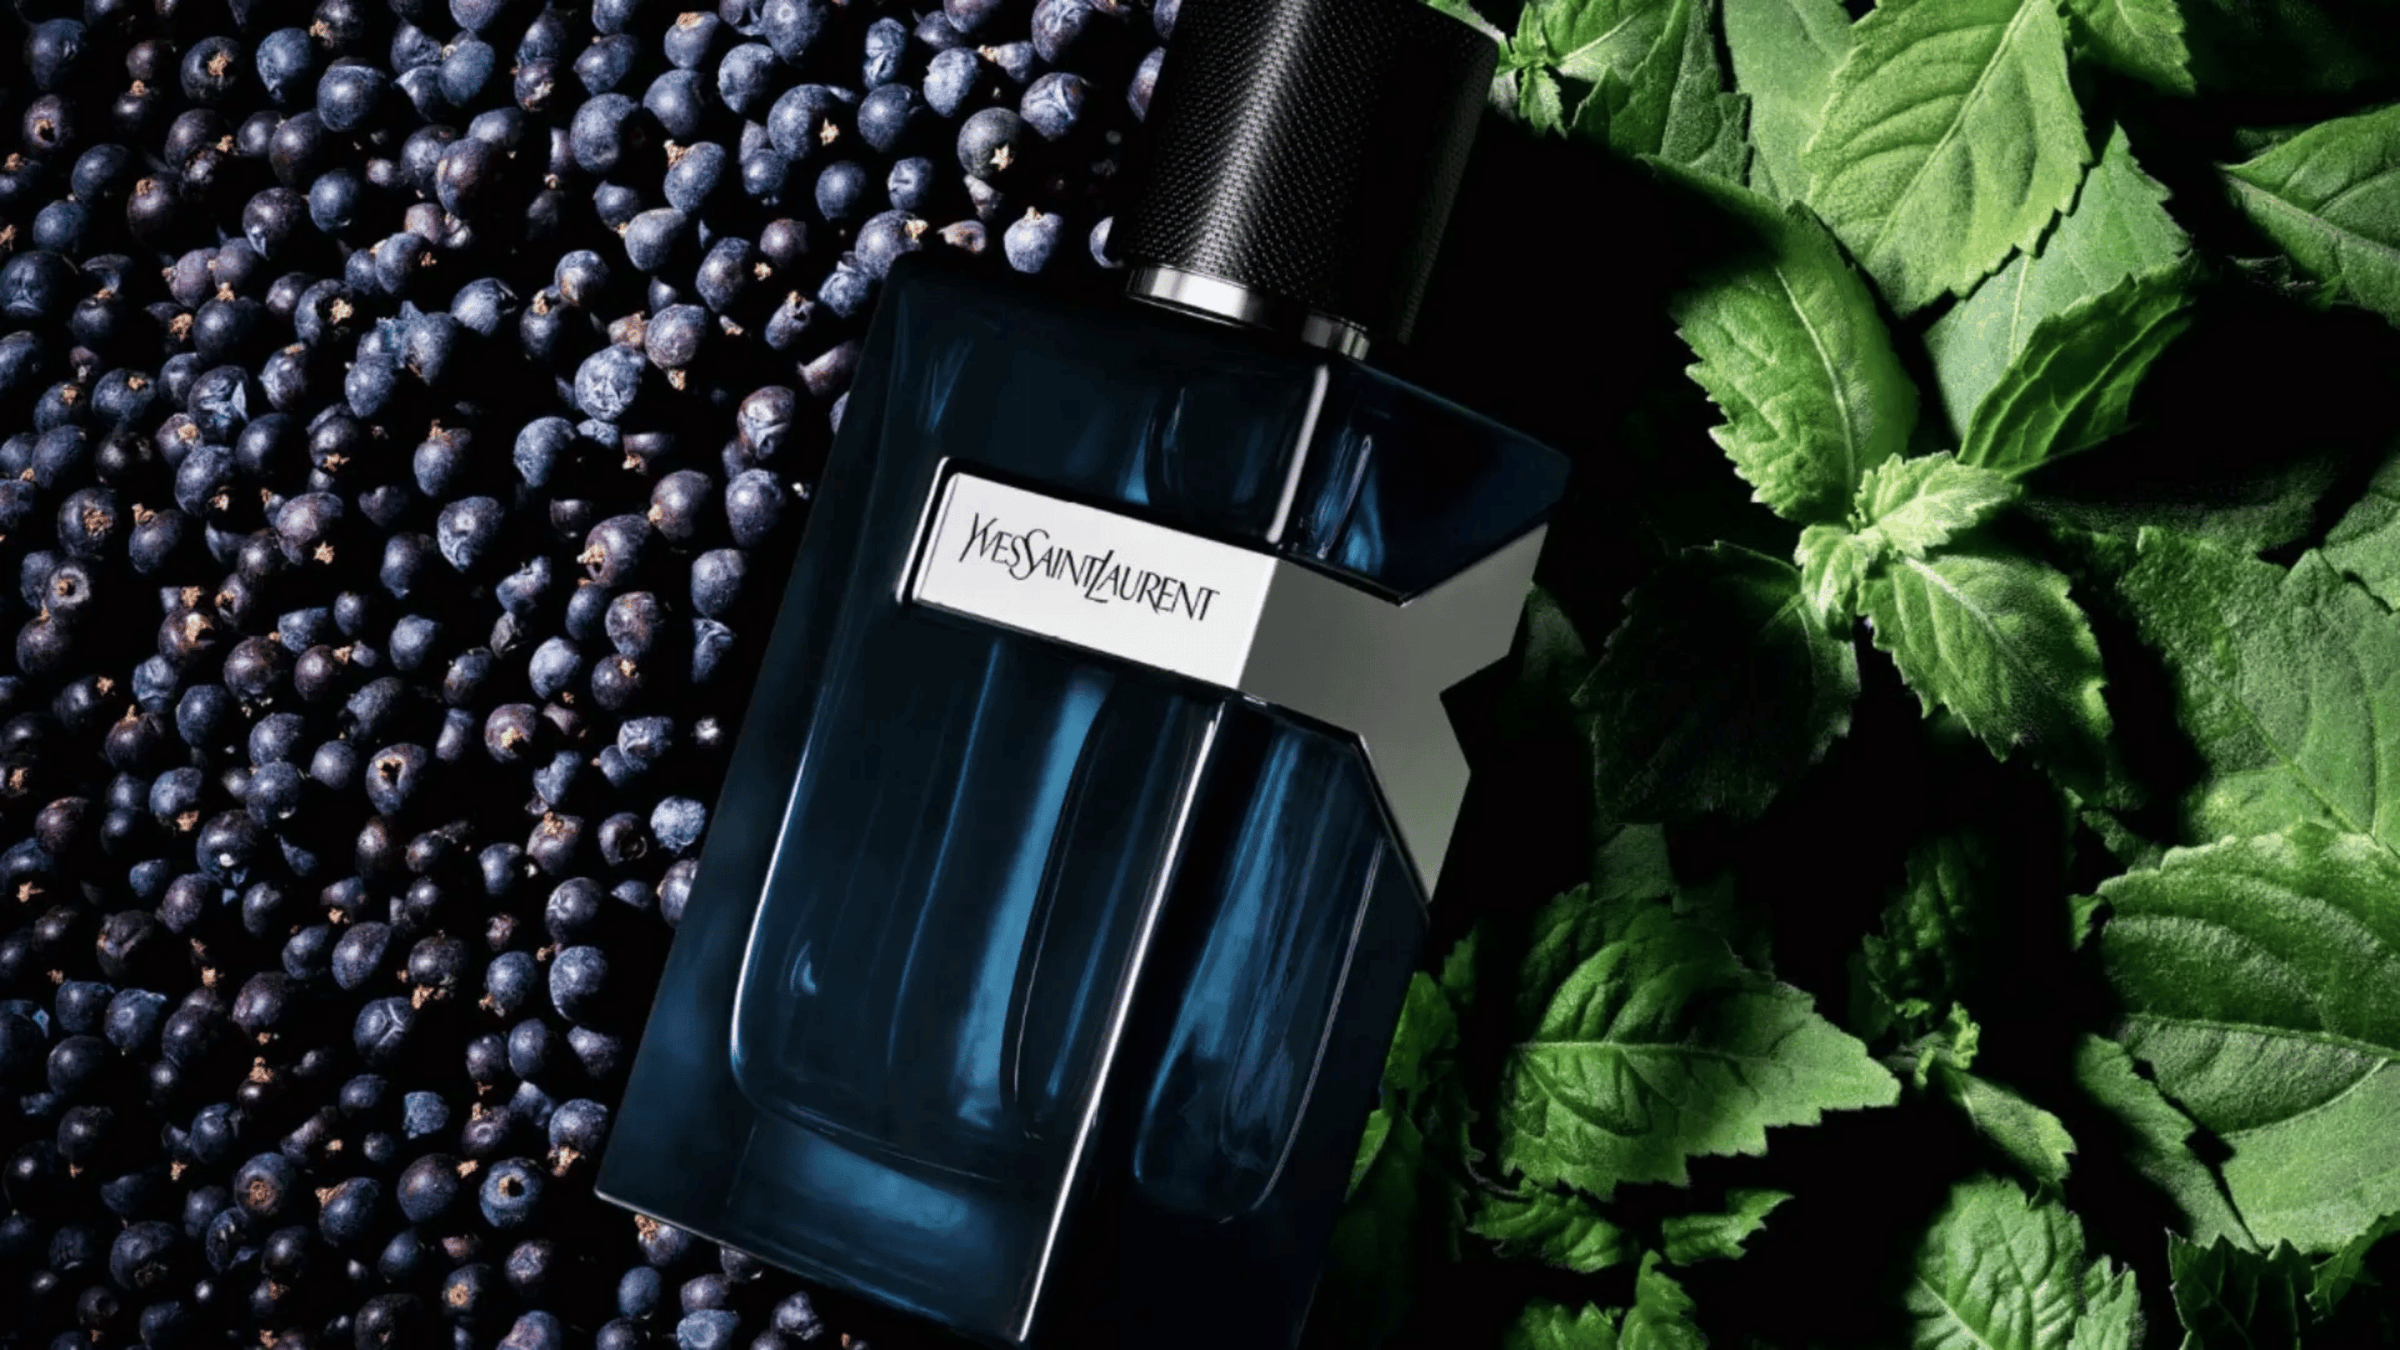 Parfym från Yves Saint Laurent. Flaskan är mörkblå med silvriga detaljer och svart text